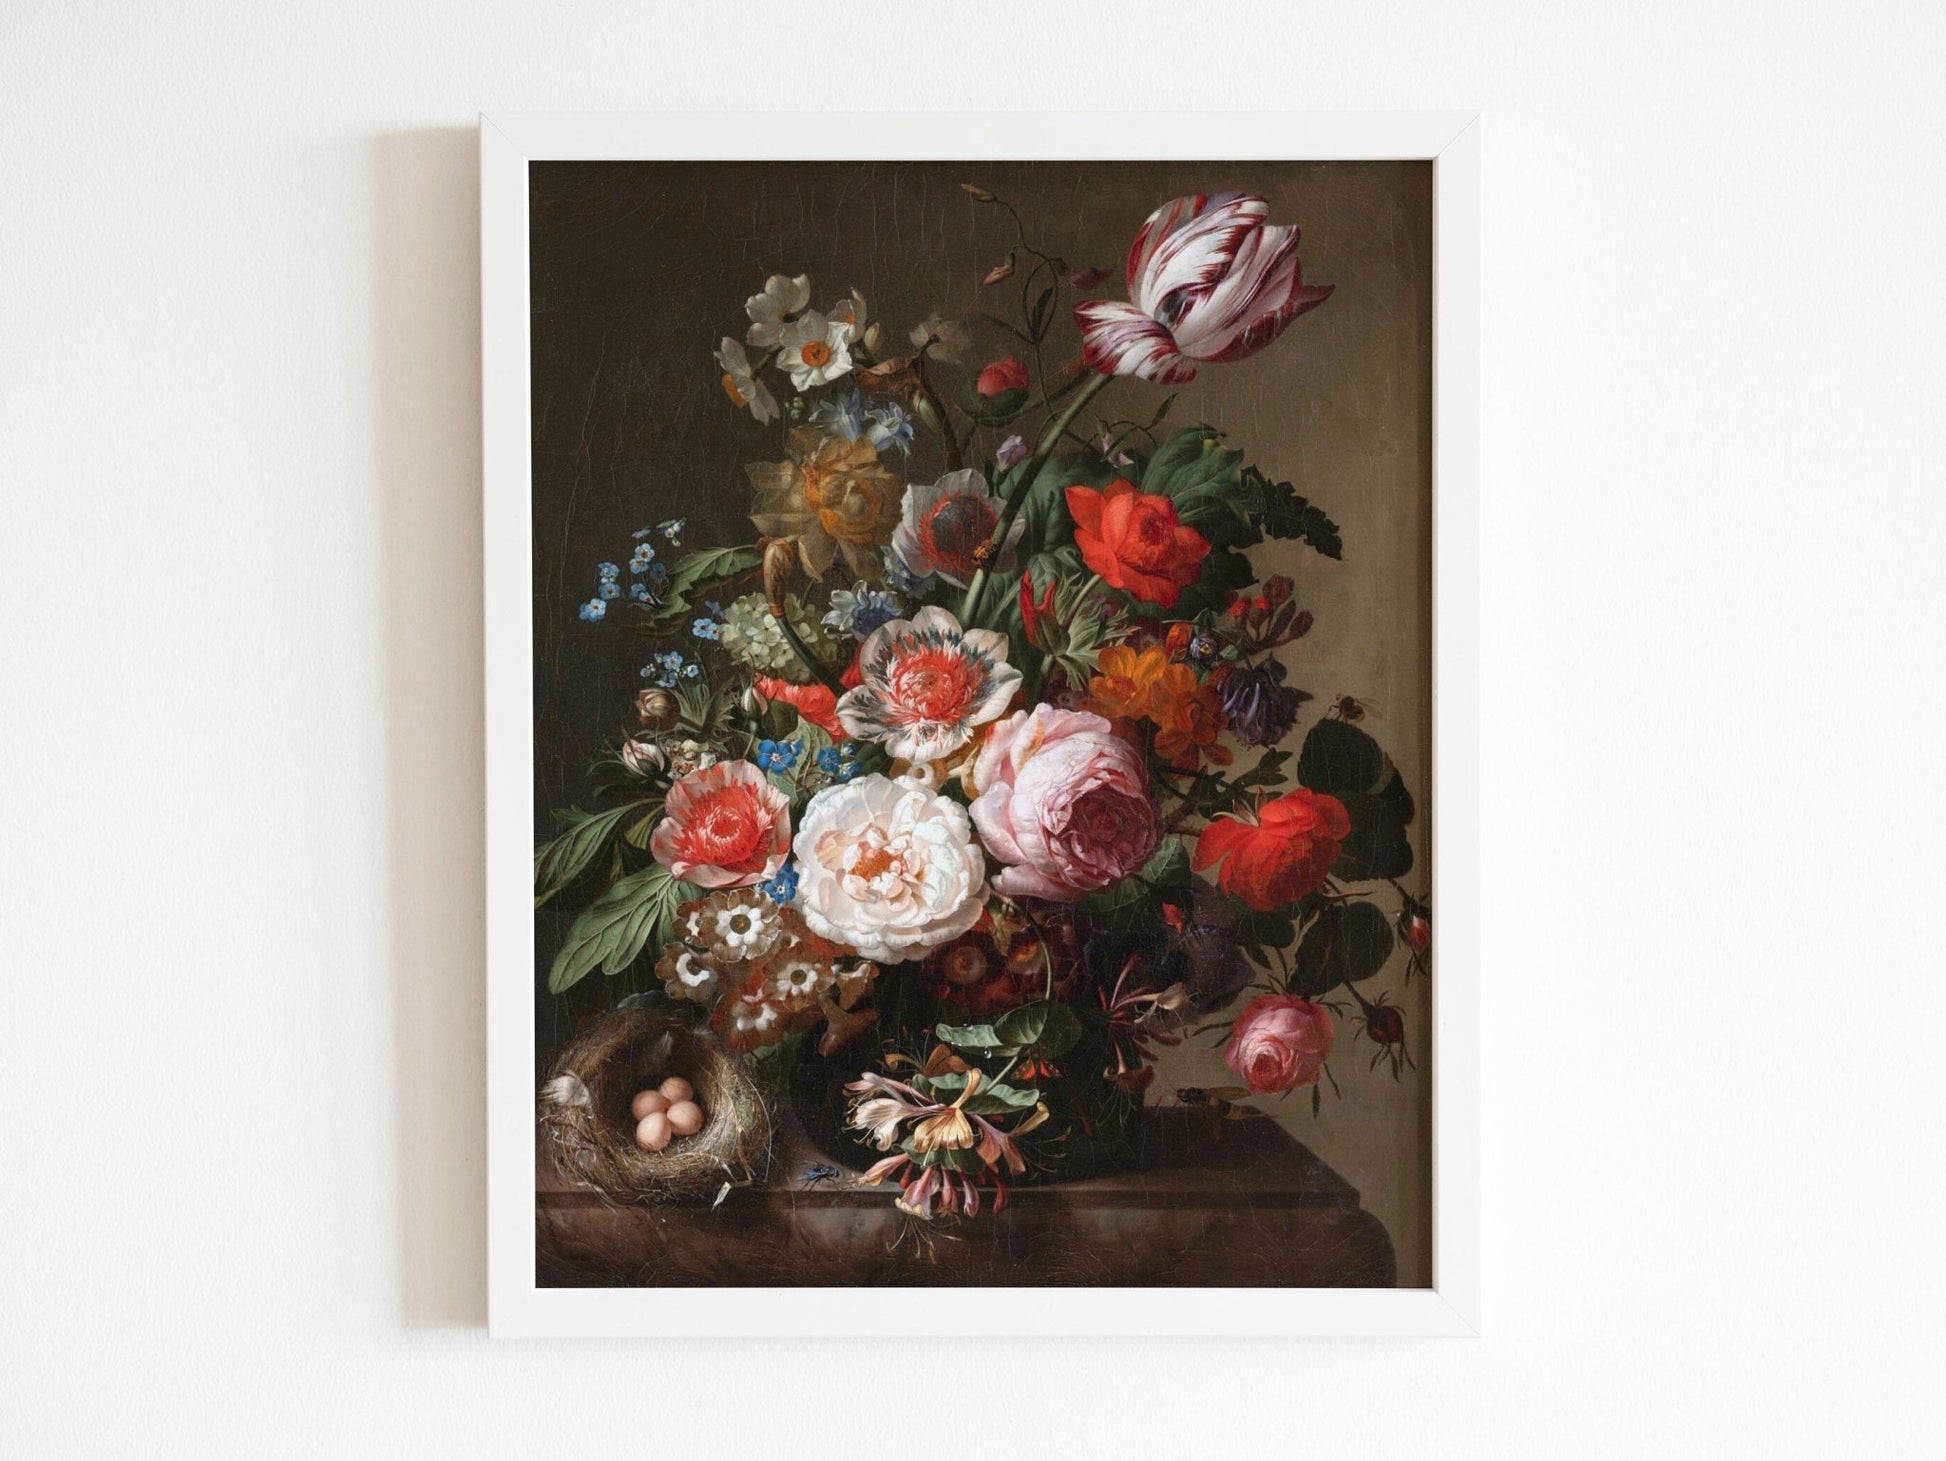 RACHEL RUYSCH - Flowers In A Vase With A Bird's Nest - Pathos Studio - Art Prints